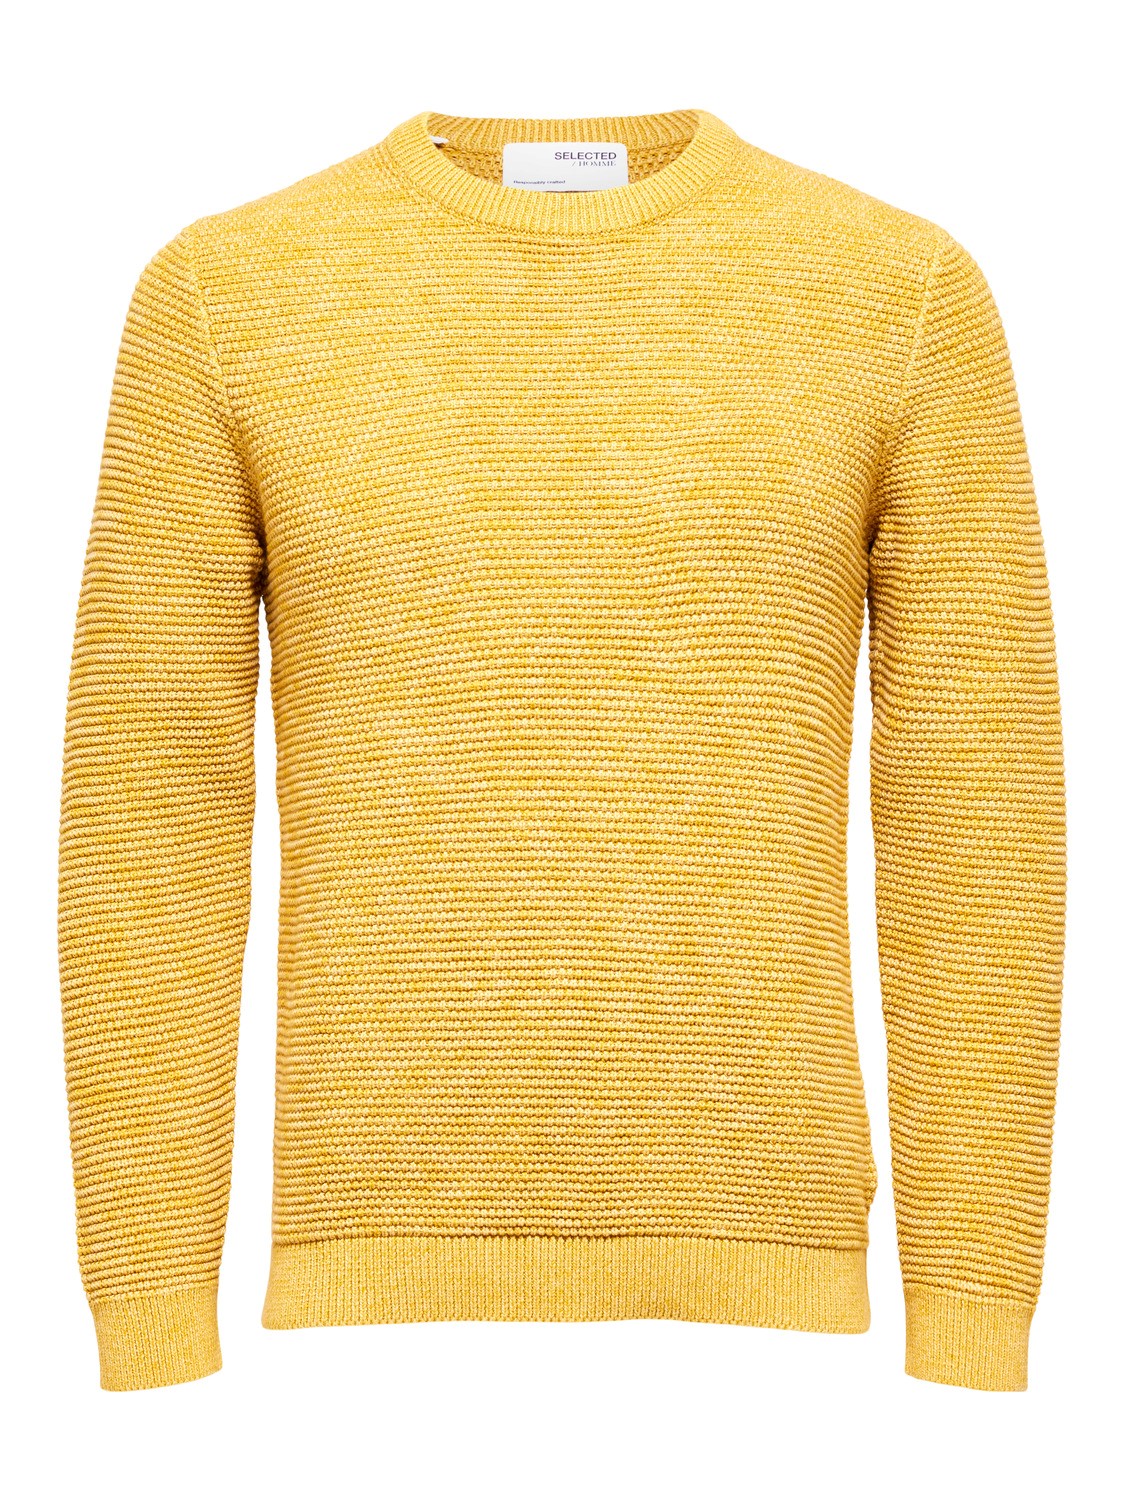 Пуловер SELECTED HOMME SLHVINCE, желтый пуловер selected homme slhvince коричневый